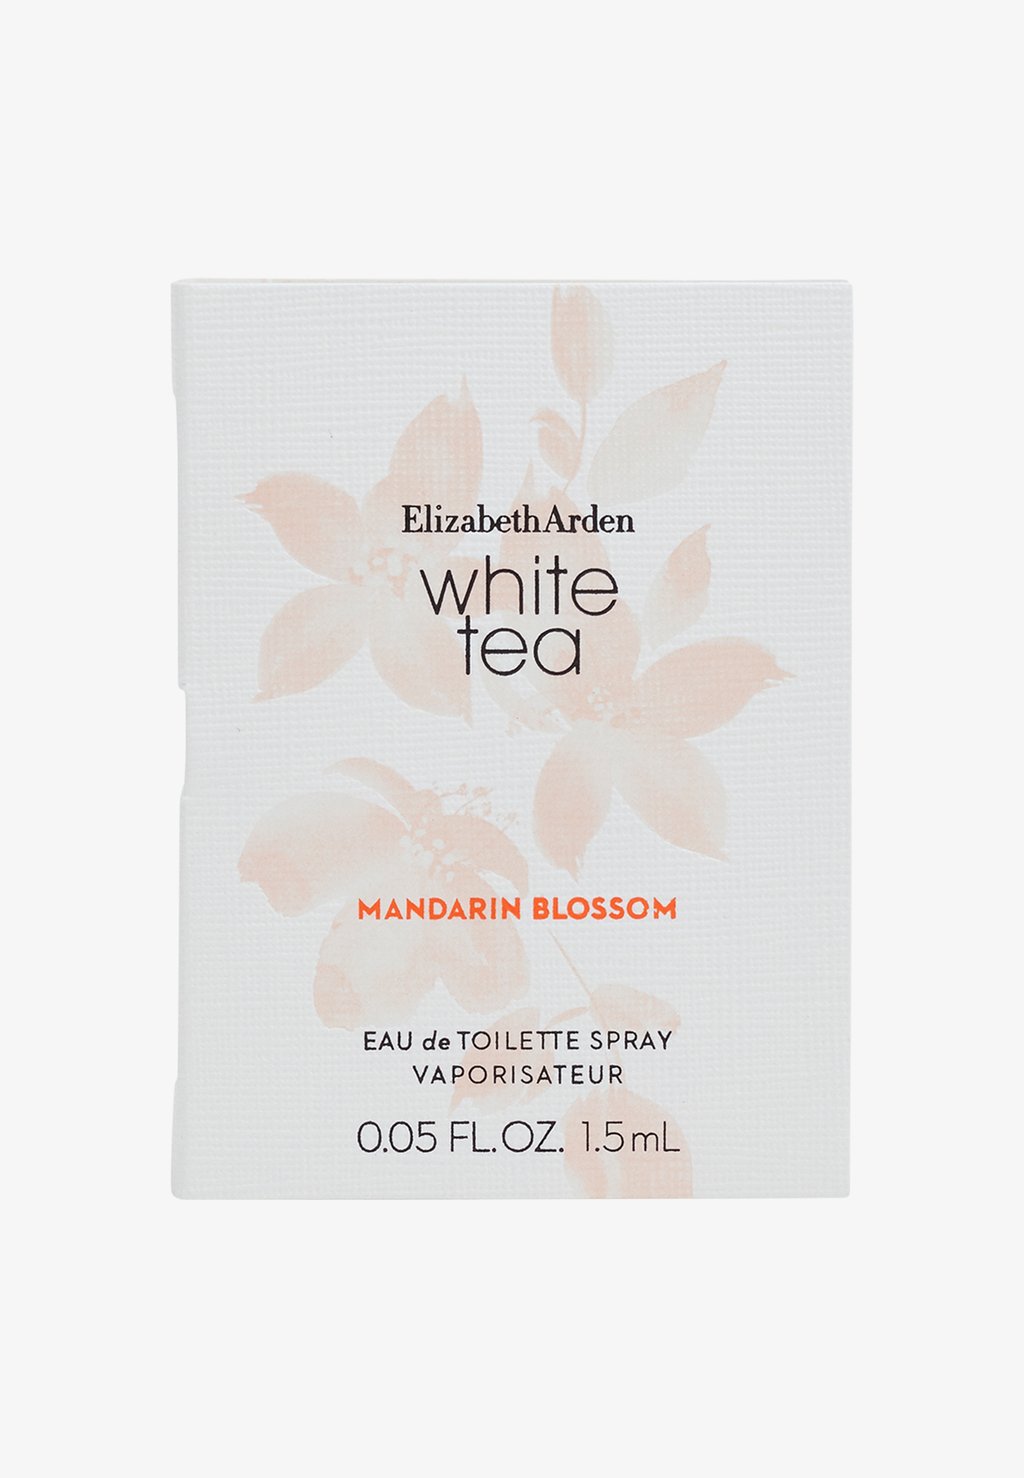 white tea mandarin blossom туалетная вода 100мл Туалетная вода White Tea Mandarin Blossom Edt Elizabeth Arden